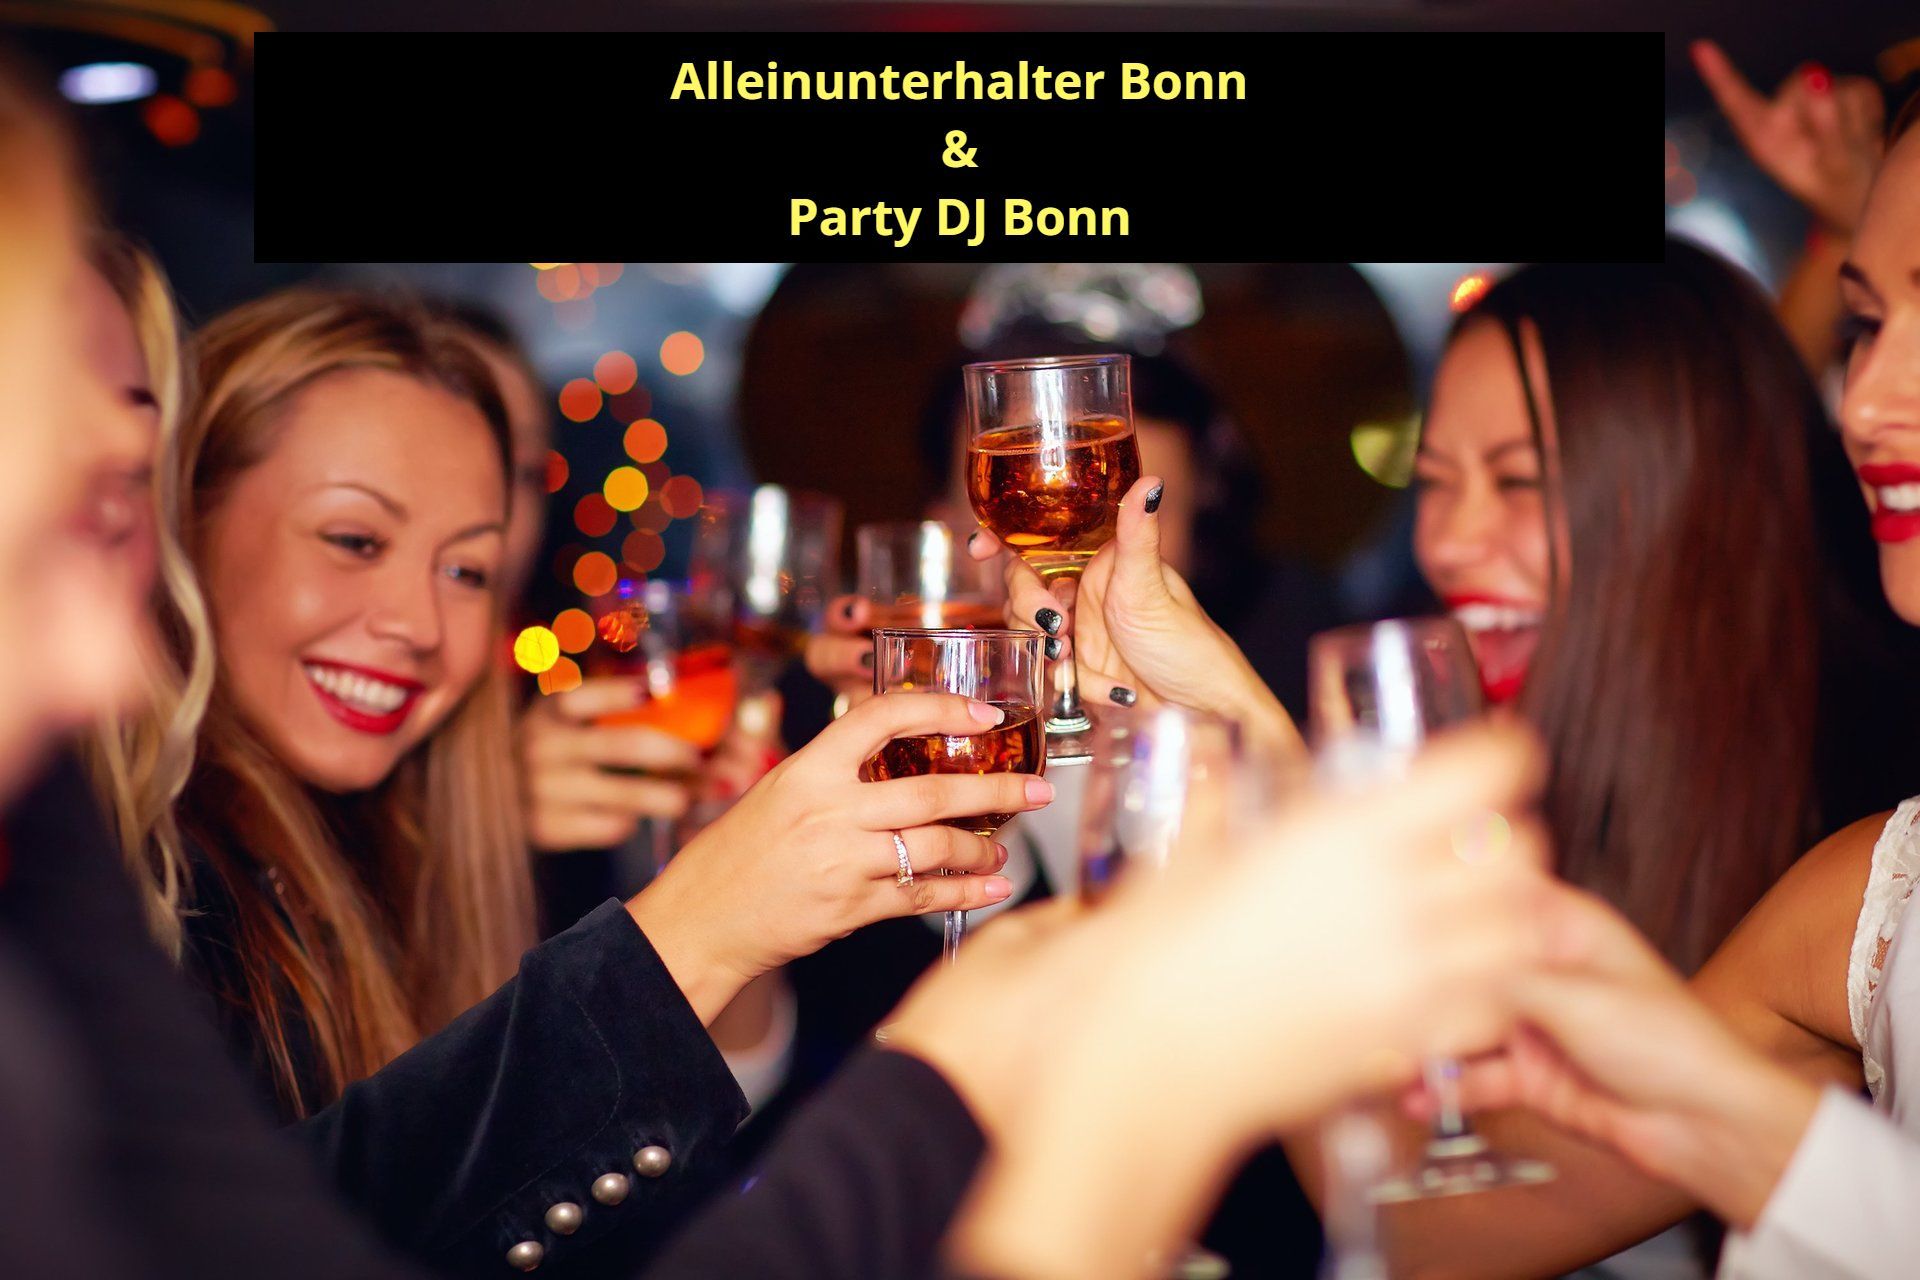 Alleinunterhalter Bonn - Top Stimmung mit Live Musik und DJ Bonn